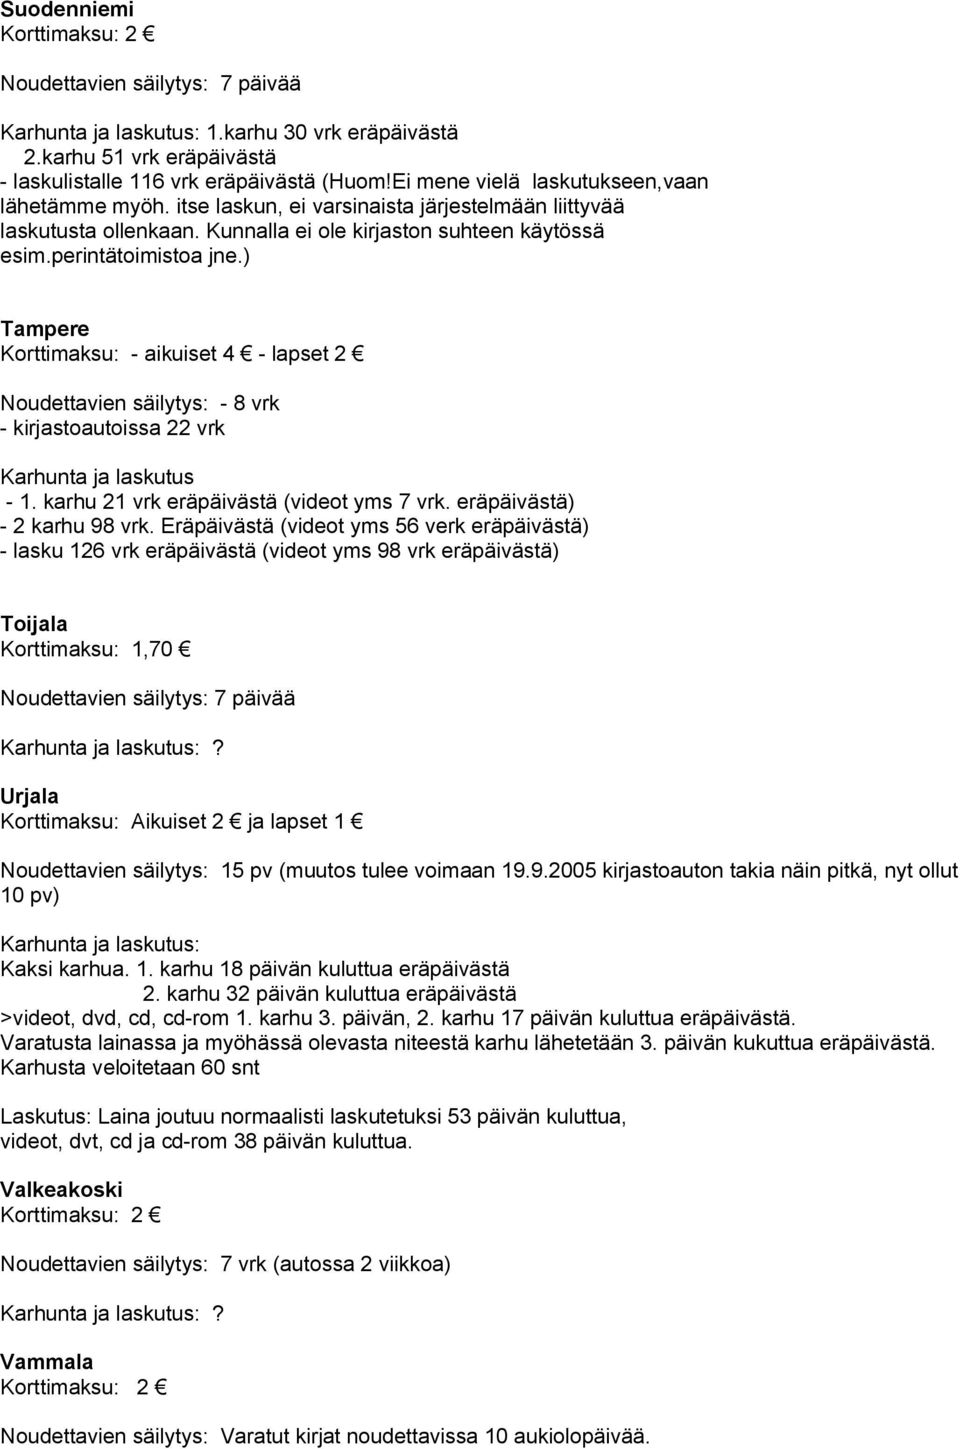 ) Tampere Korttimaksu: aikuiset 4 lapset 2 Noudettavien säilytys: 8 vrk kirjastoautoissa 22 vrk Karhunta ja laskutus 1. karhu 21 vrk eräpäivästä (videot yms 7 vrk. eräpäivästä) 2 karhu 98 vrk.